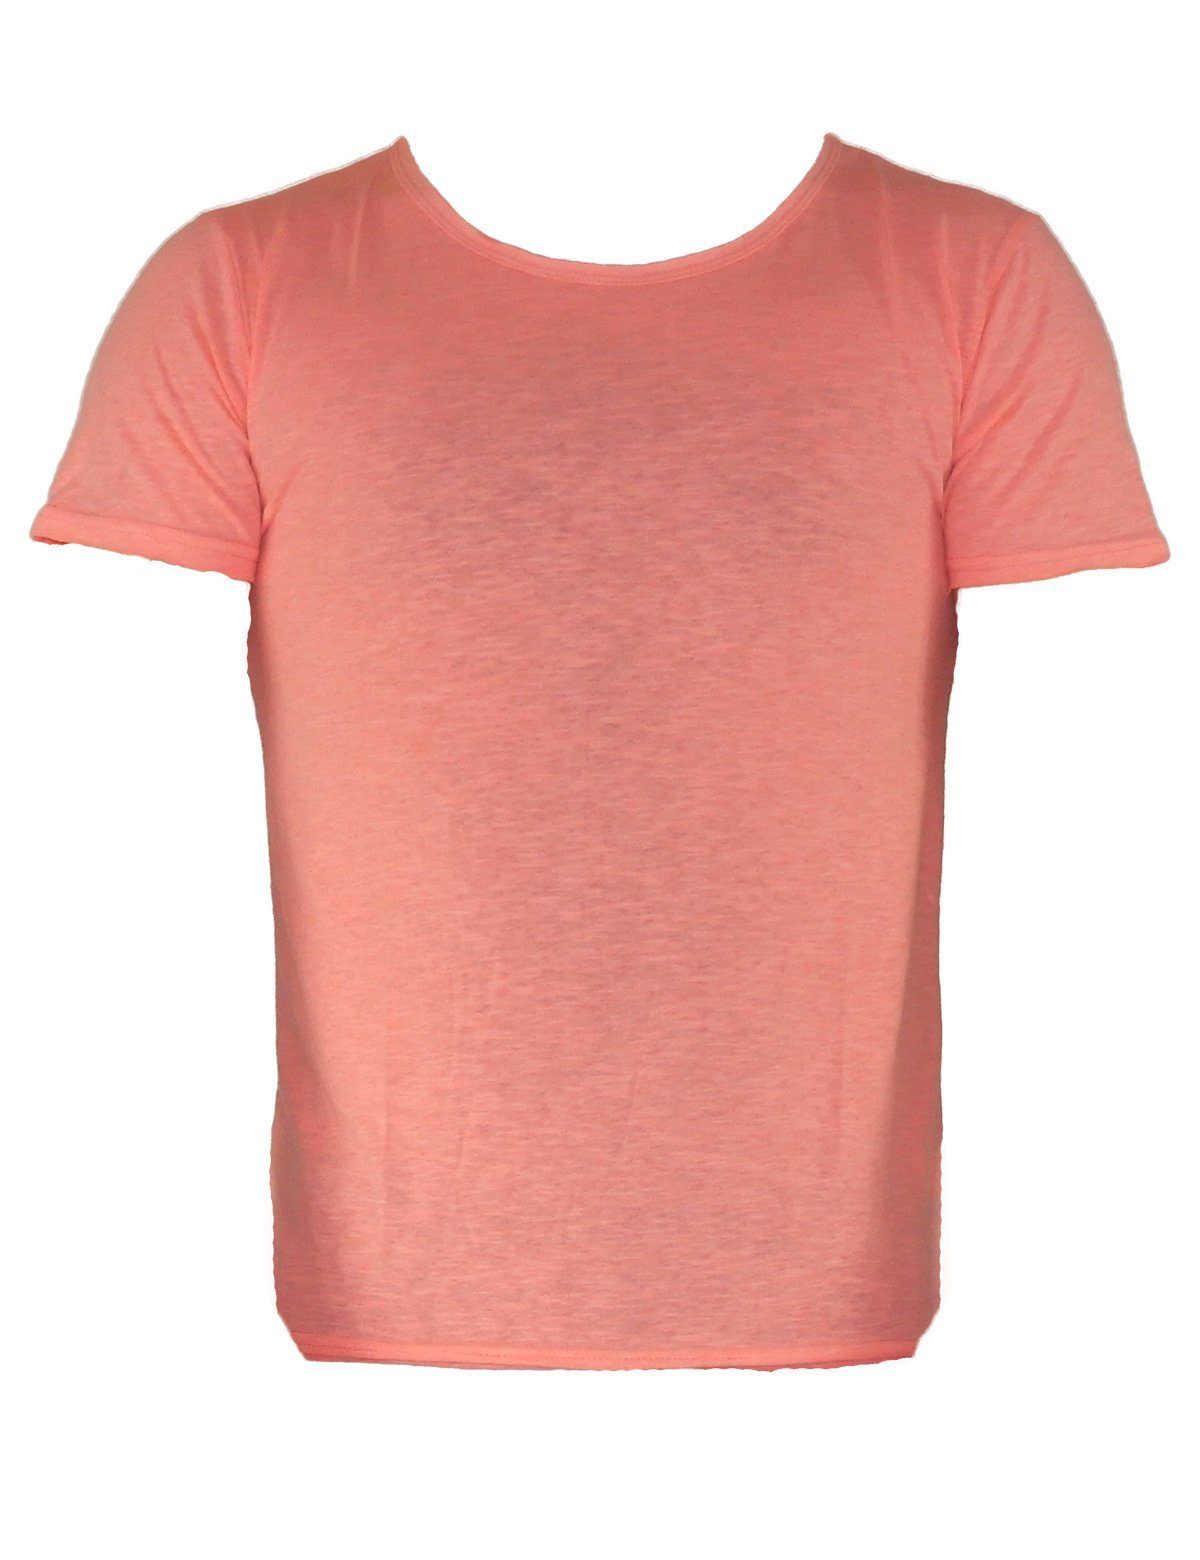 YESET T-Shirt Top Kurzarm T-Shirt Poloshirt Tank Shirt Hemd Herren Rosa 551 Figurbetont